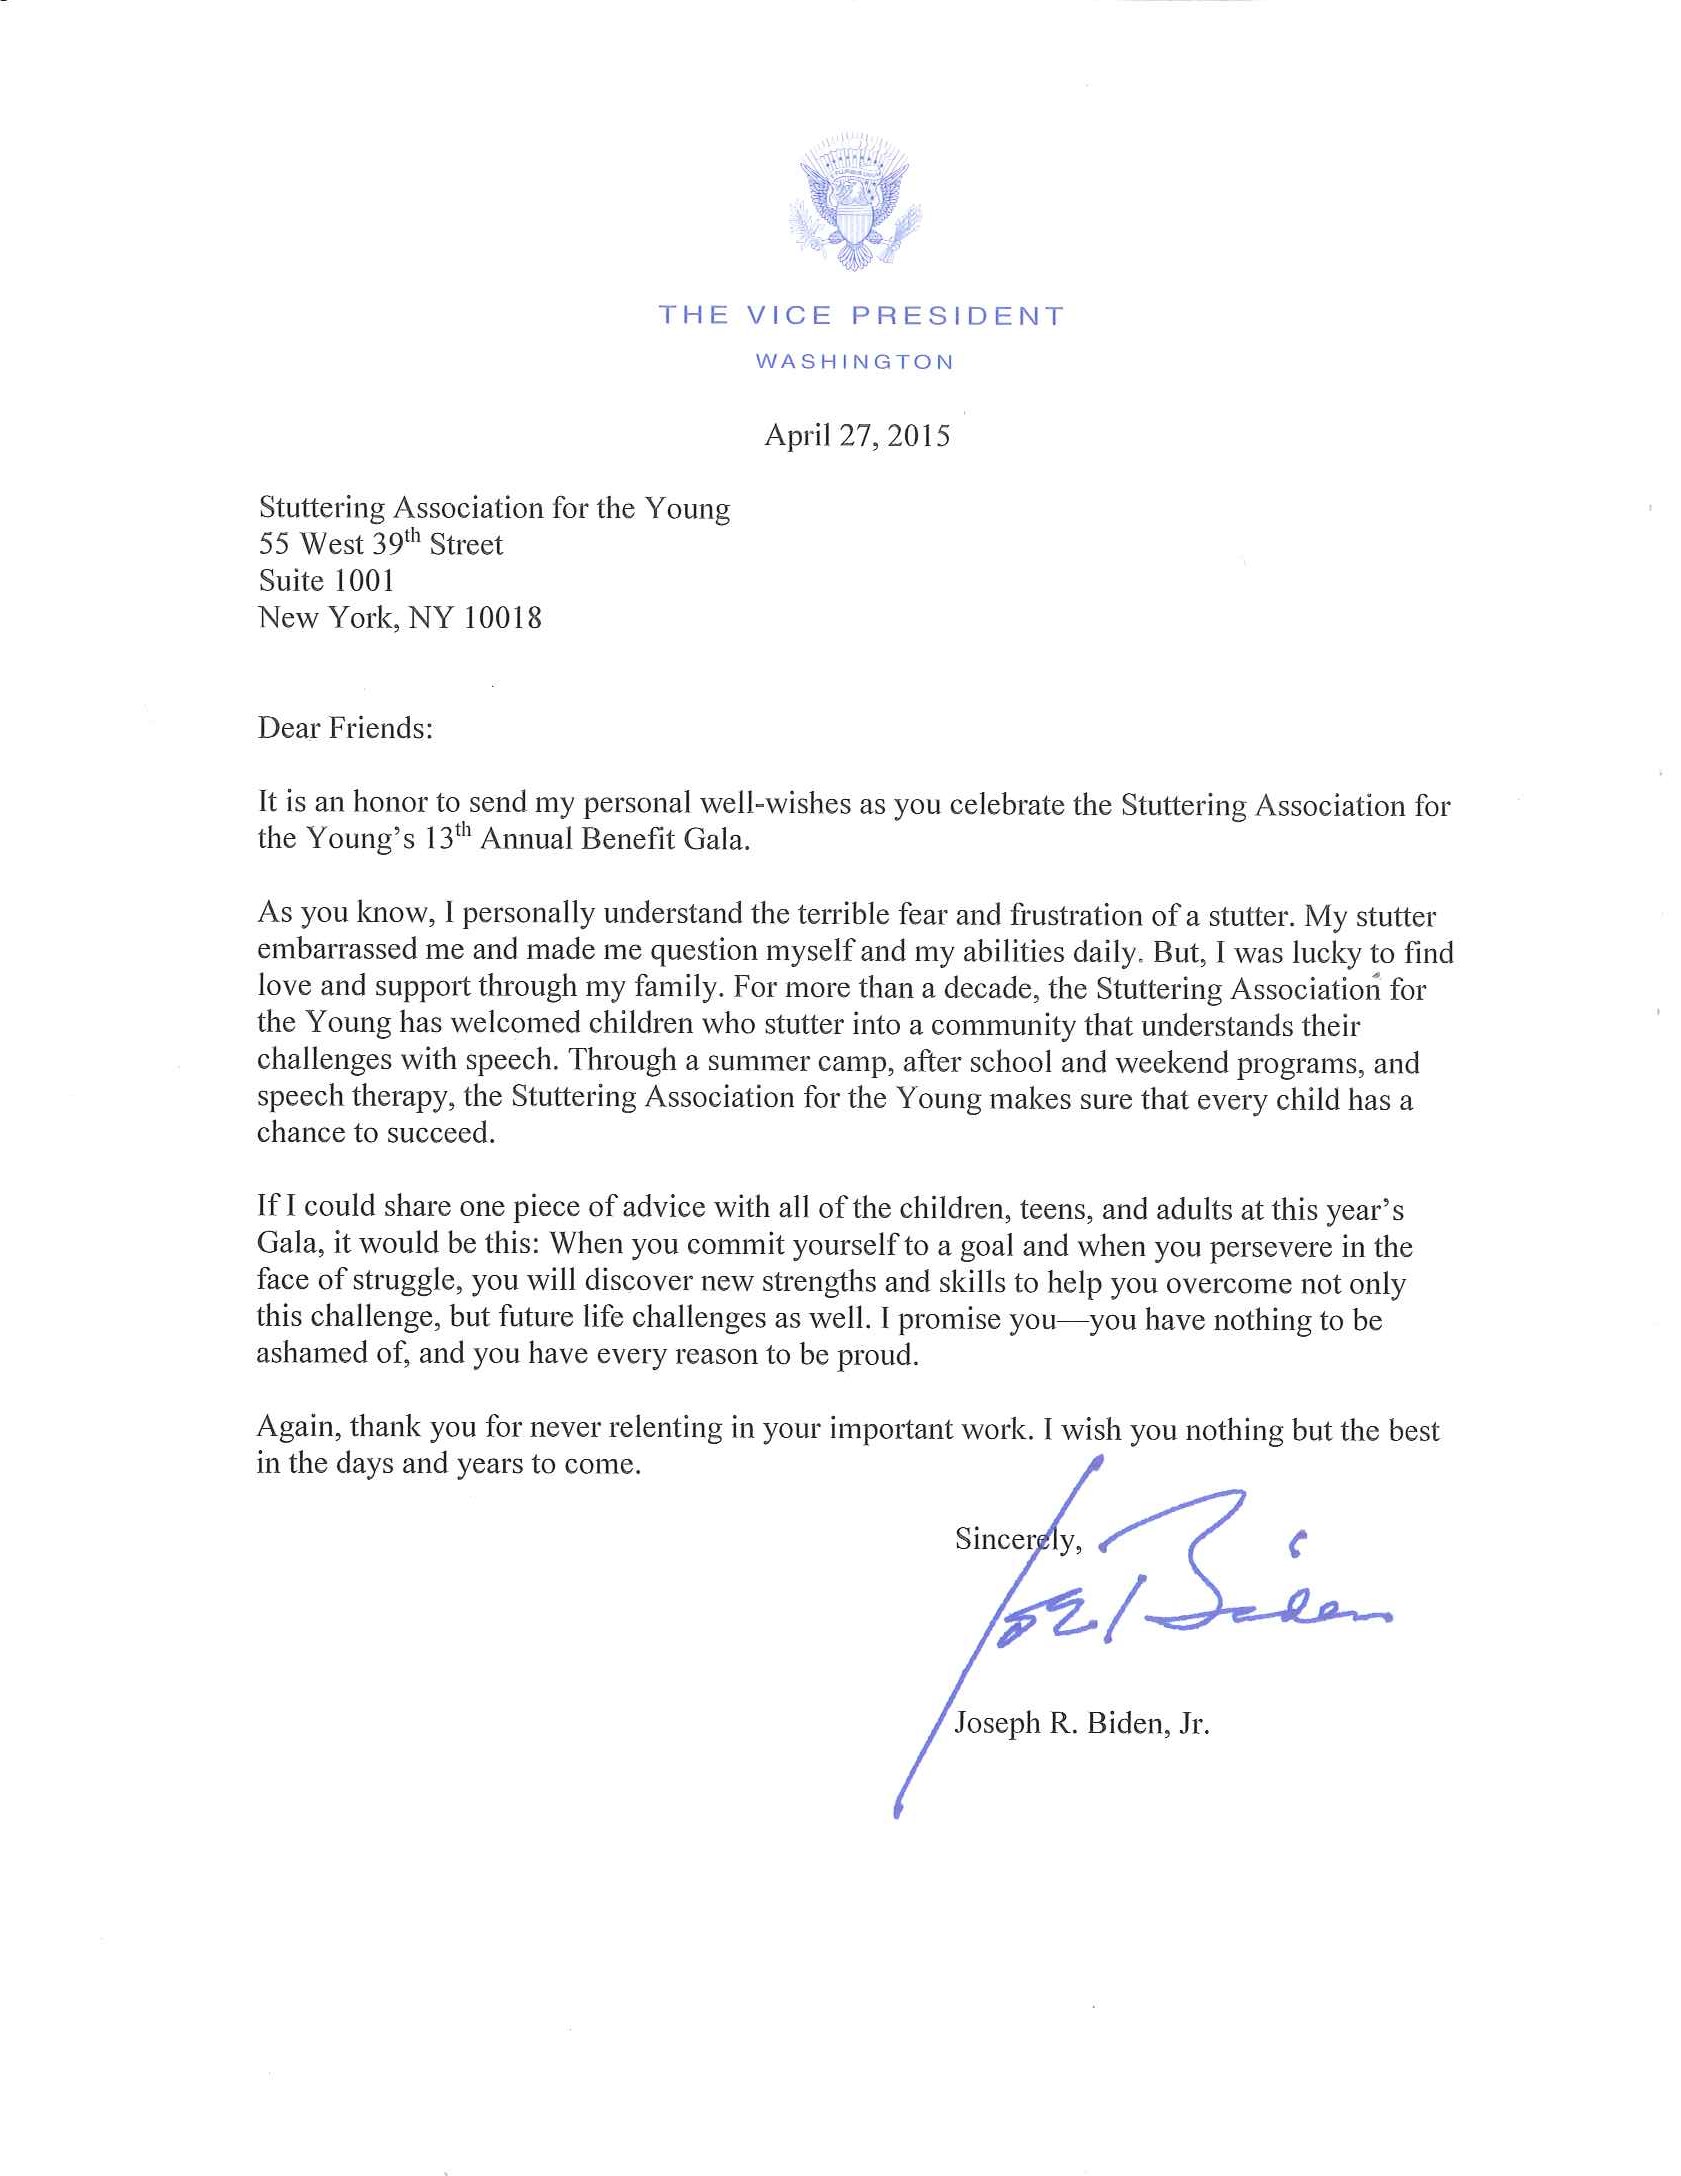 Letter from Vice President Biden